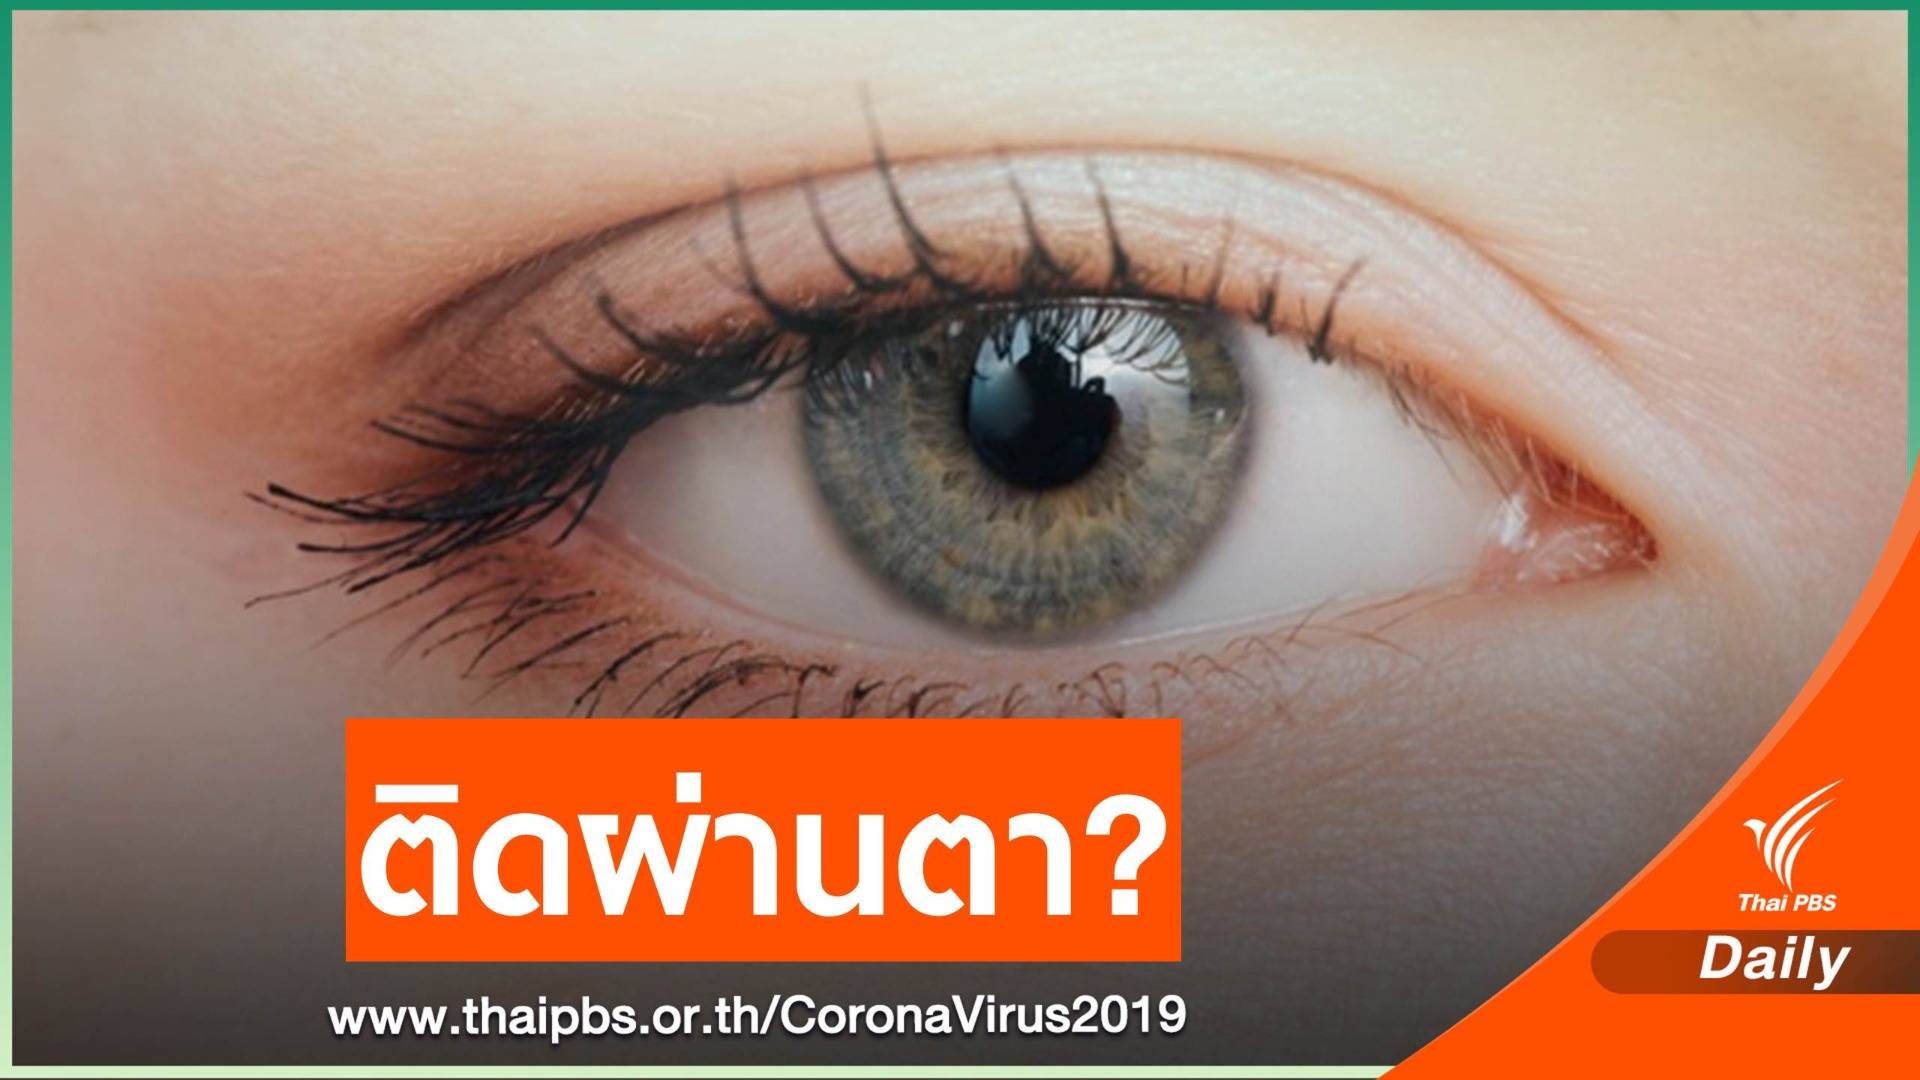 หมอชี้ “COVID-19” อาจติดผ่าน “ดวงตา” ได้หากถูกจาม-ไอใส่หน้า